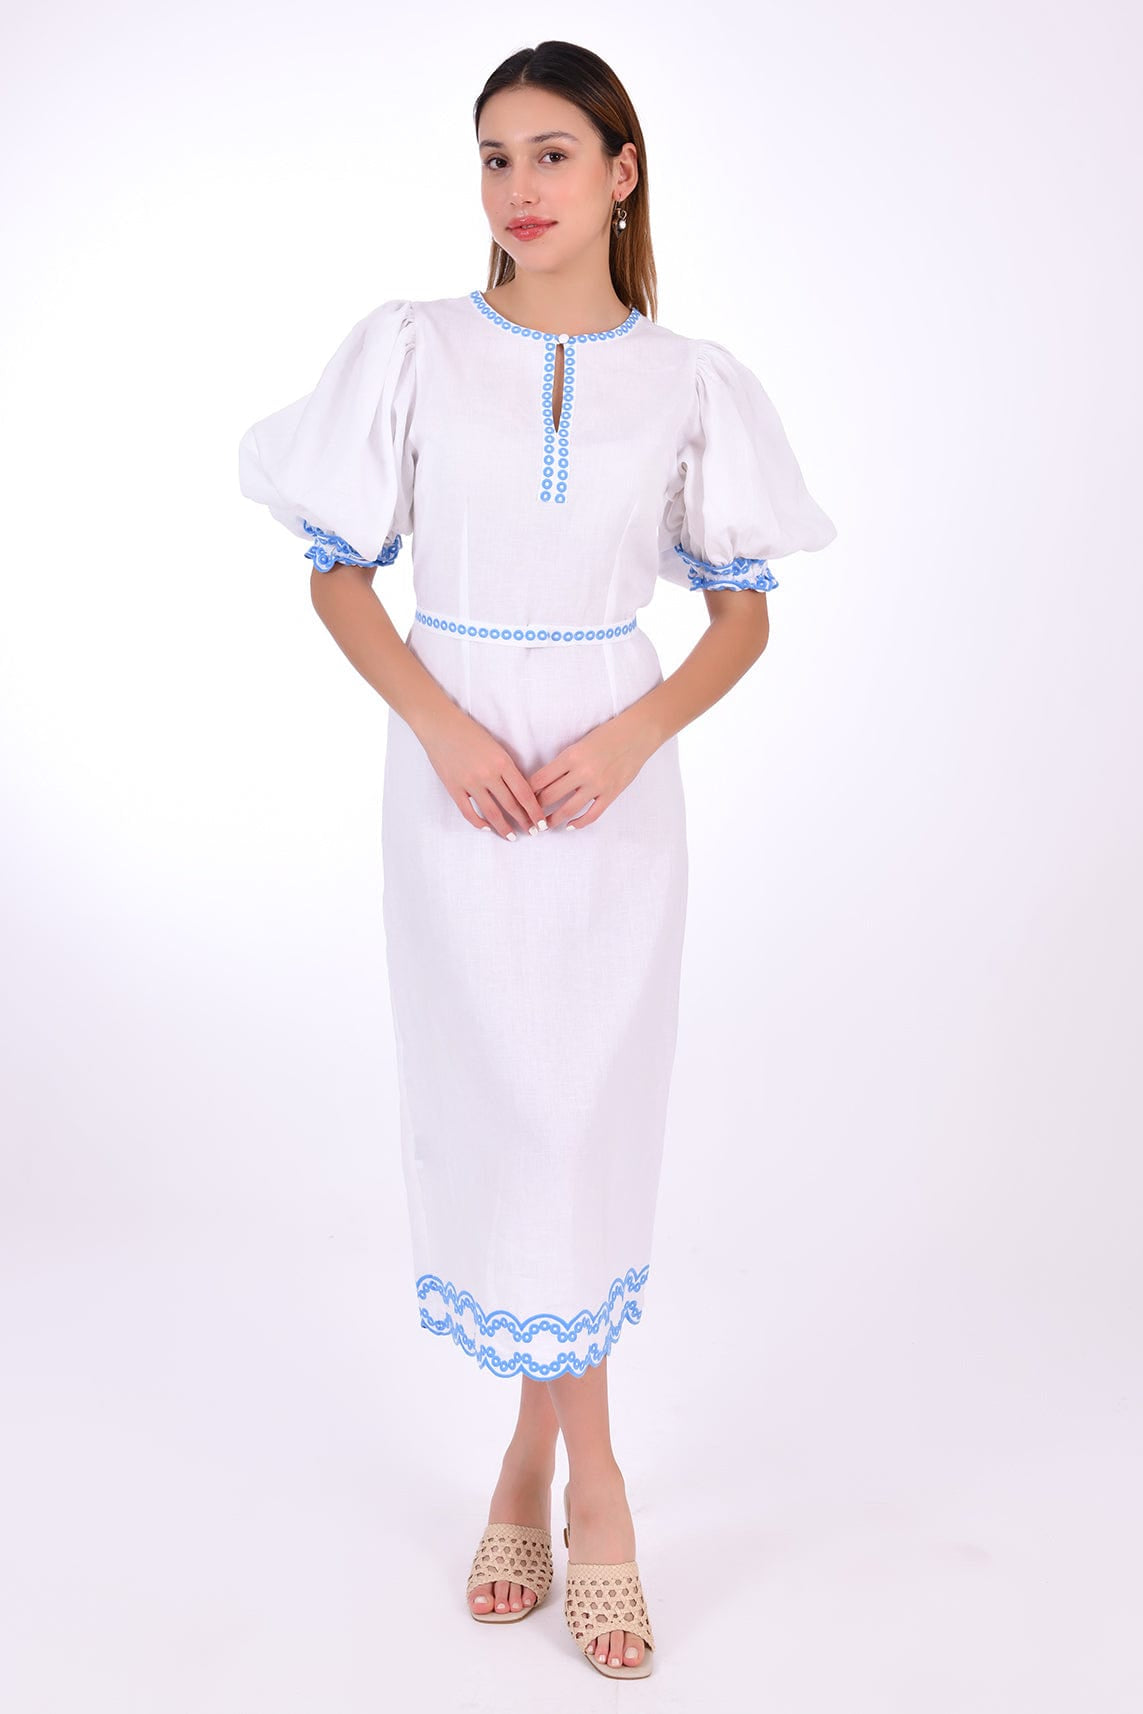 Fanm Mon Dress L / White Nehir Marassa